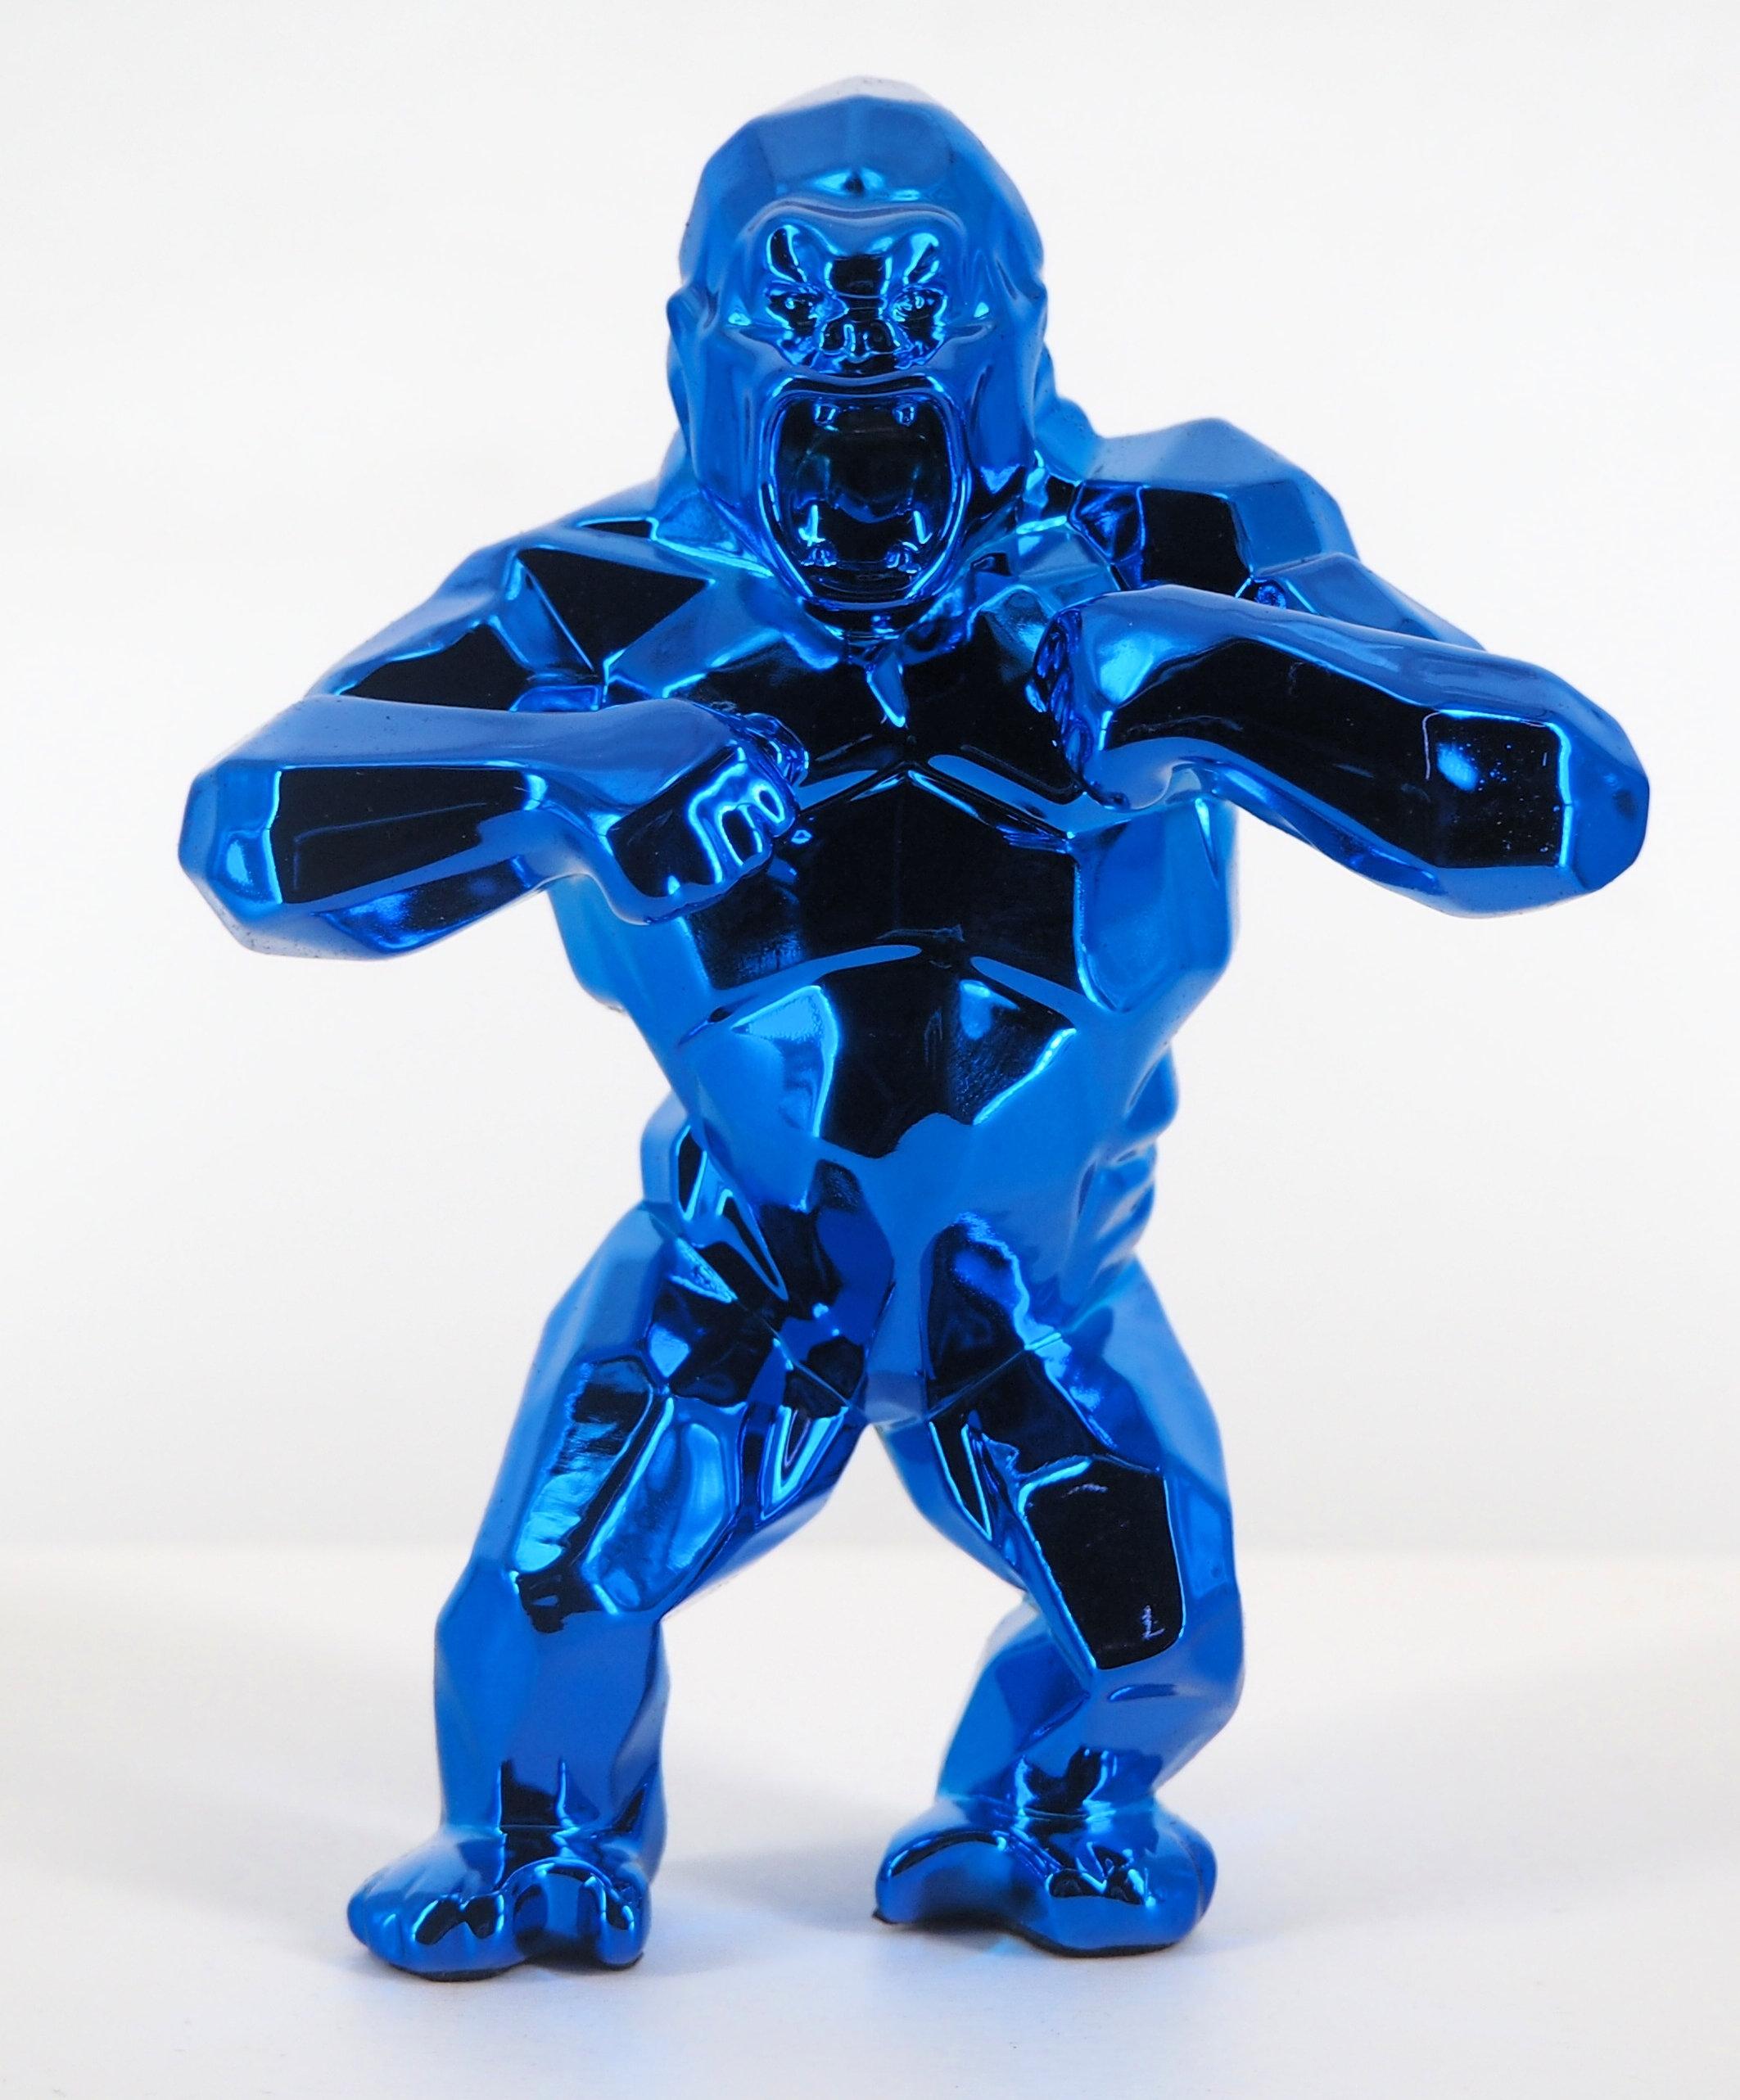 Kong Spirit (Blue edition) - Sculpture in original box with artist certificate